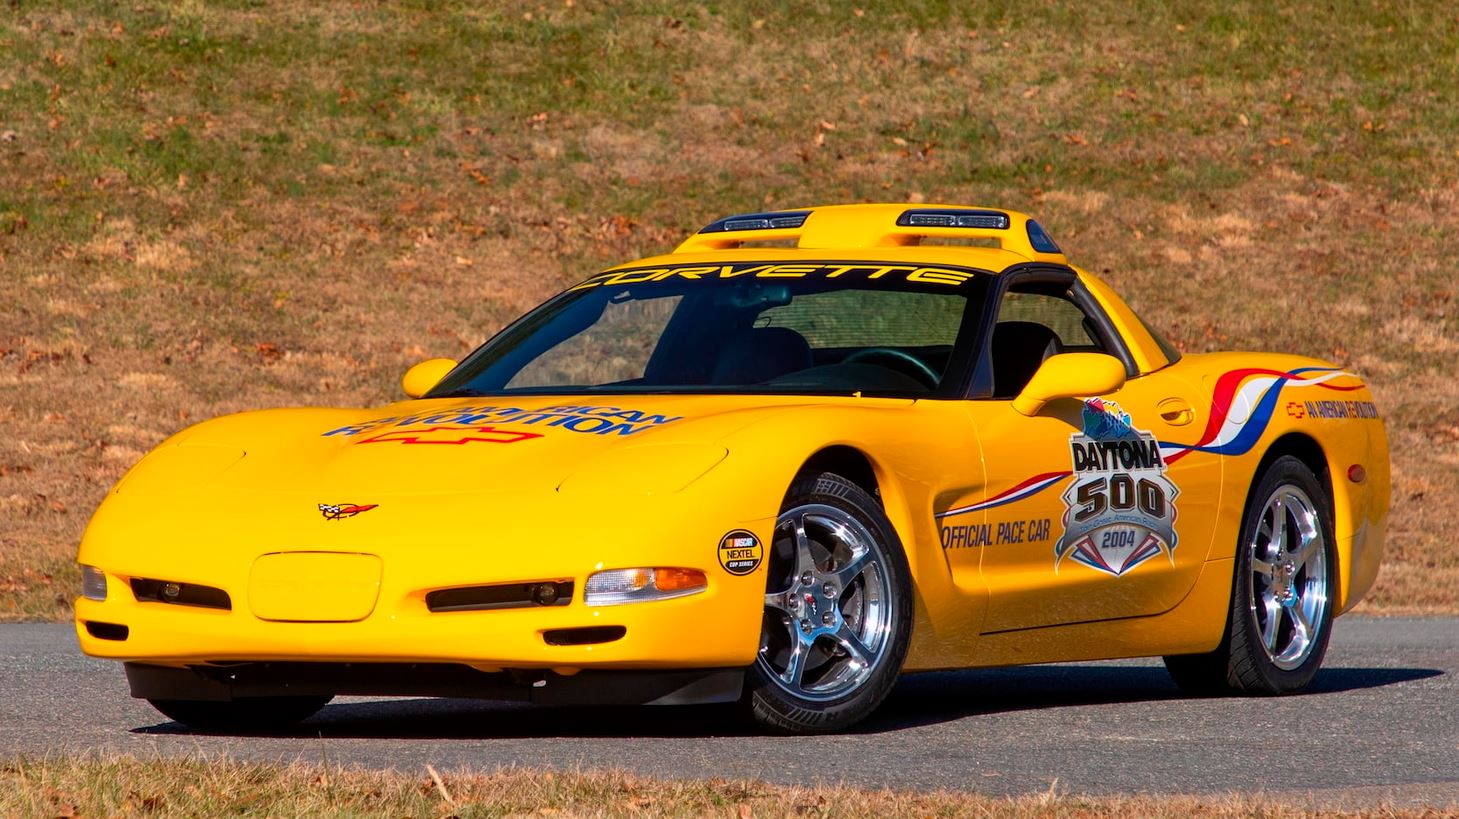 2004 Corvette C5 Daytona Pace car